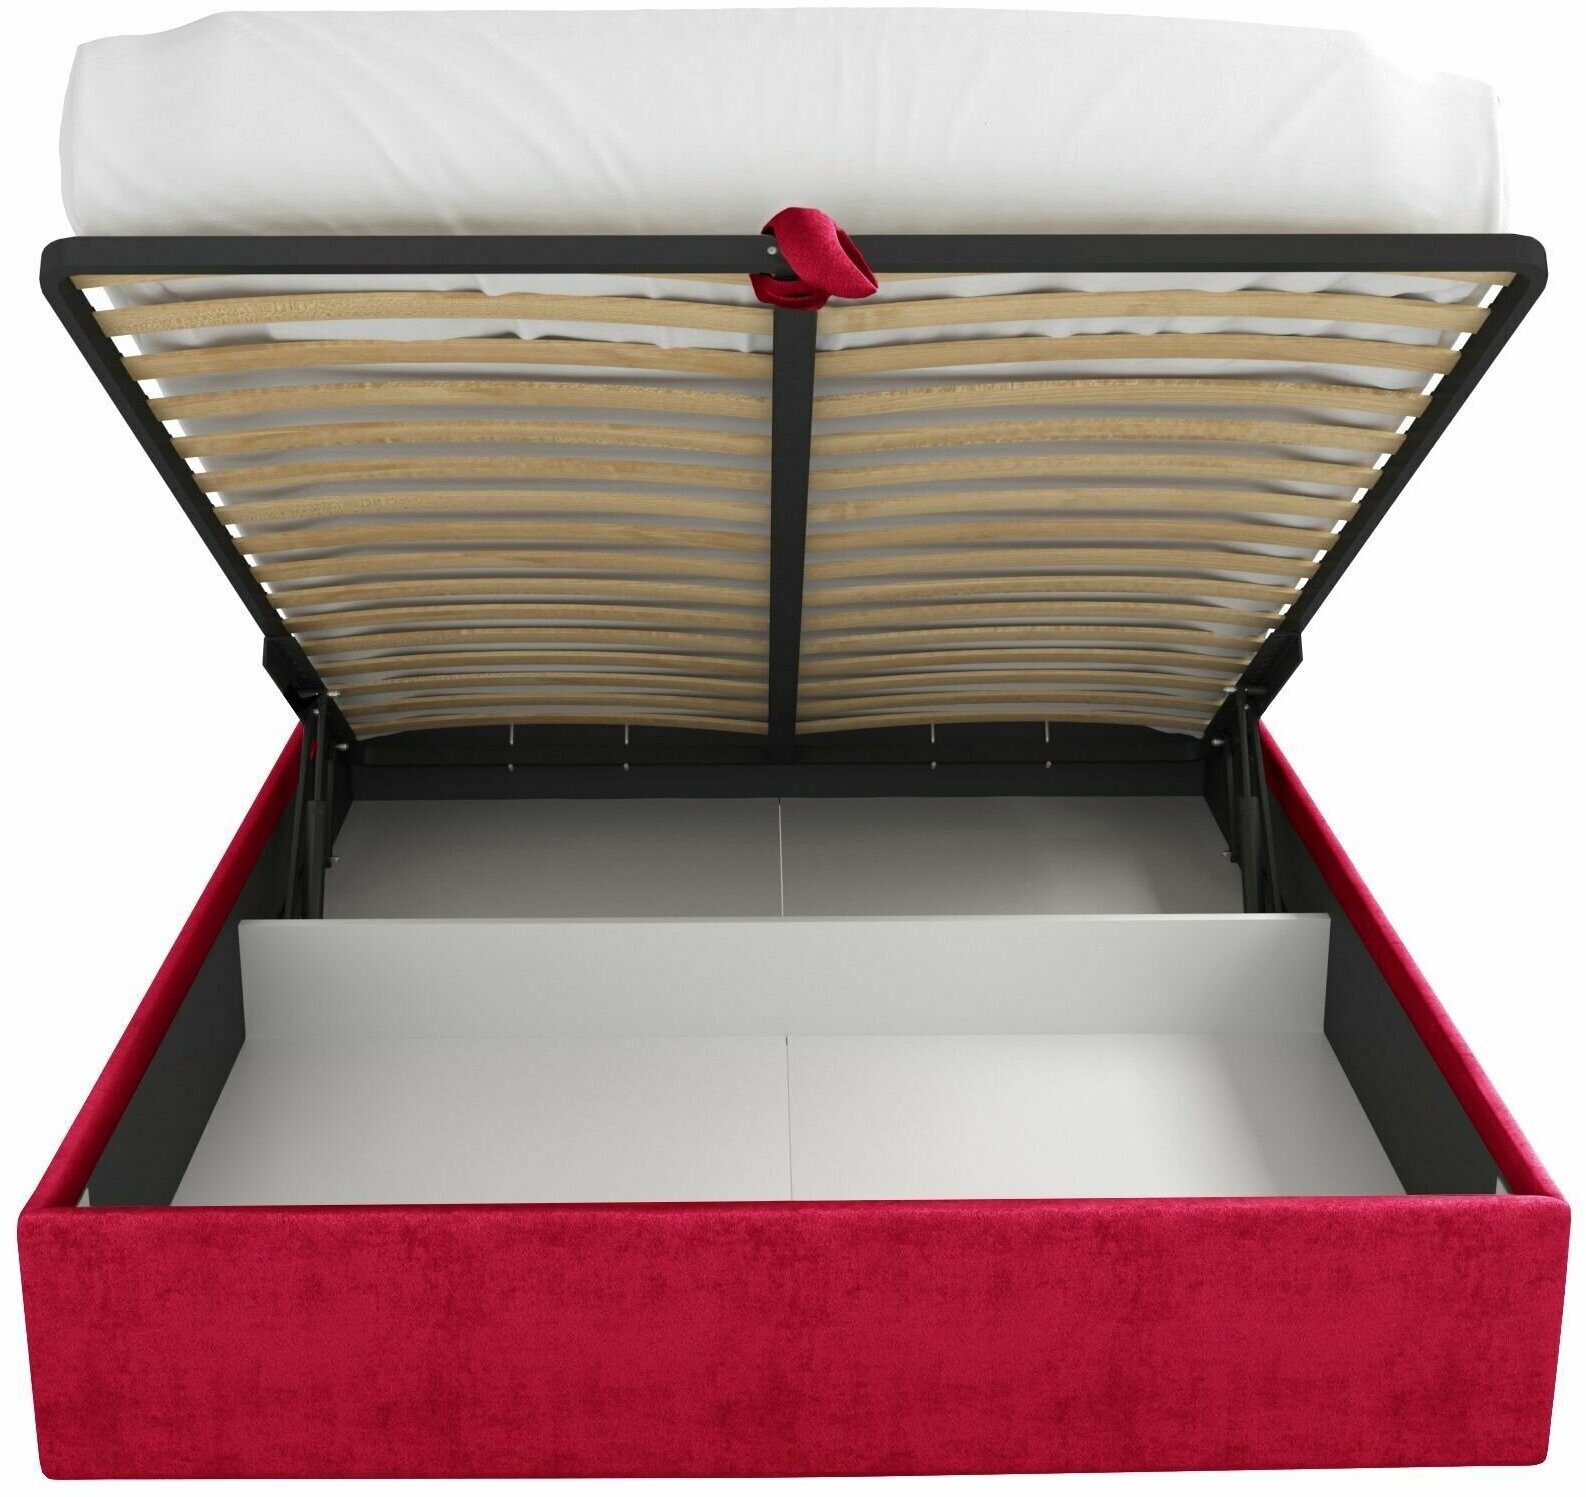 Кровать с подъемным механизмом Luxson Avalon двуспальная размер 160х200